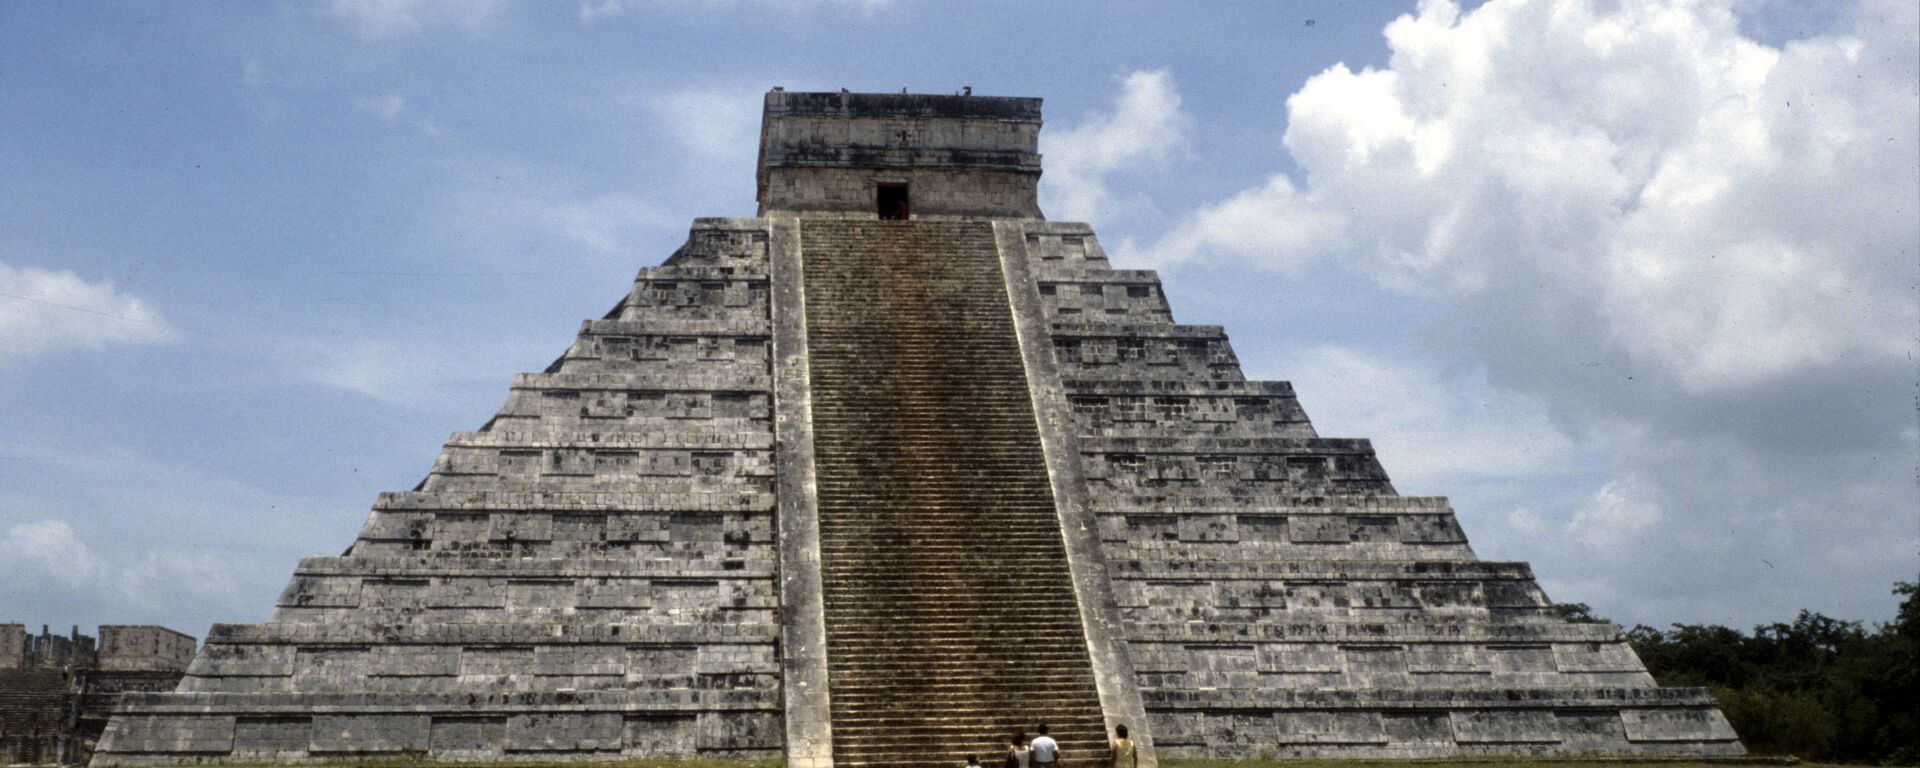 El templo de Kukulcán, en Chichén Itzá, uno de los complejos arqueológicos mayas más importantes de México - Sputnik Mundo, 1920, 02.06.2020